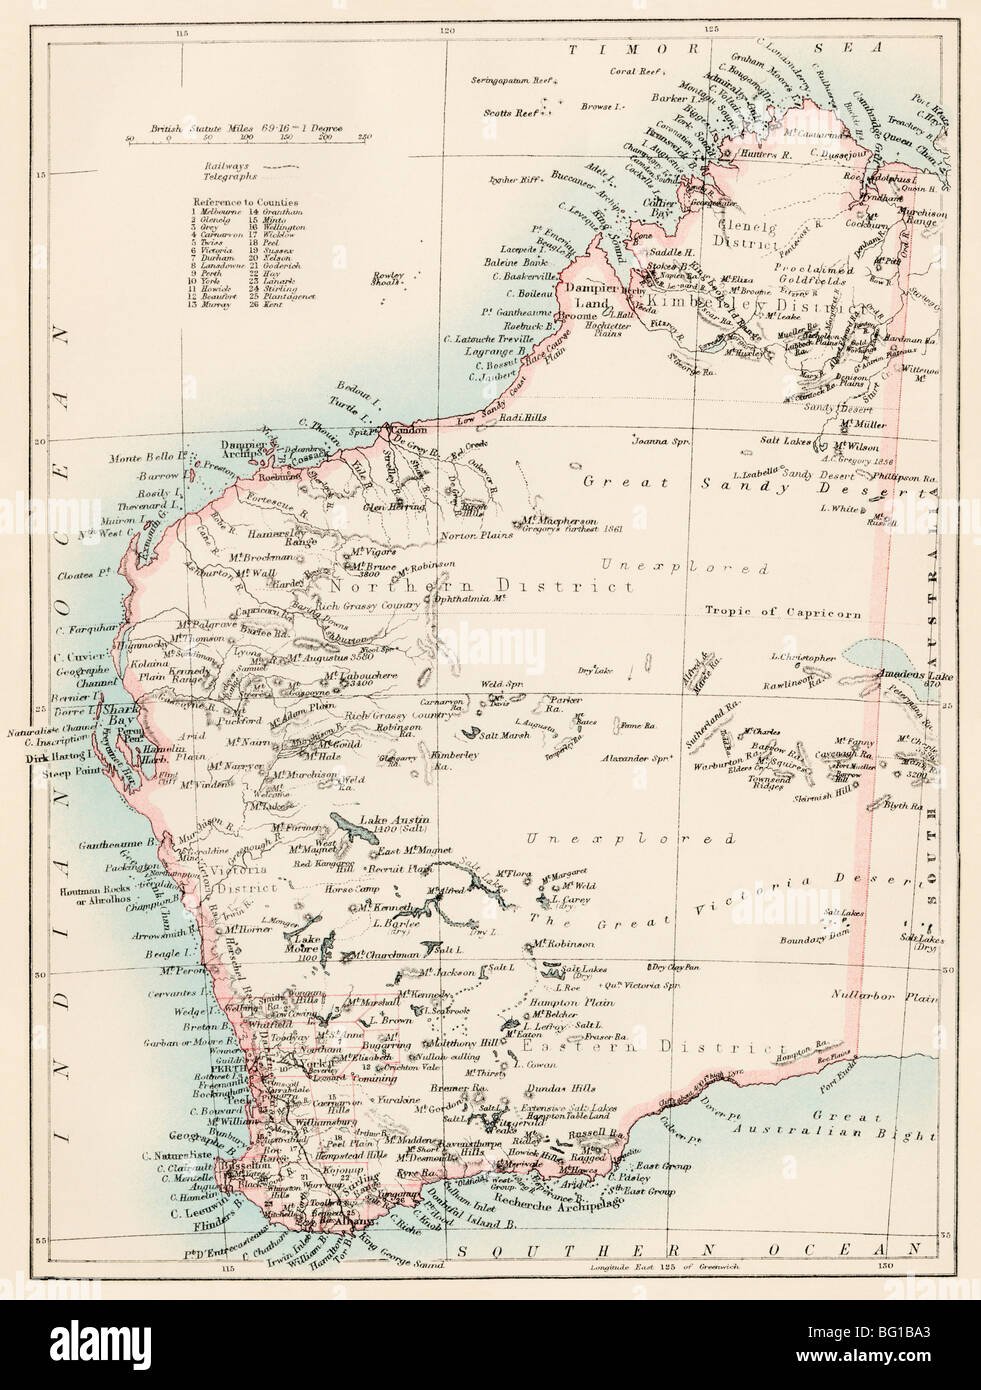 Karte von Western Australia, 1870. Farblithographie Stockfoto